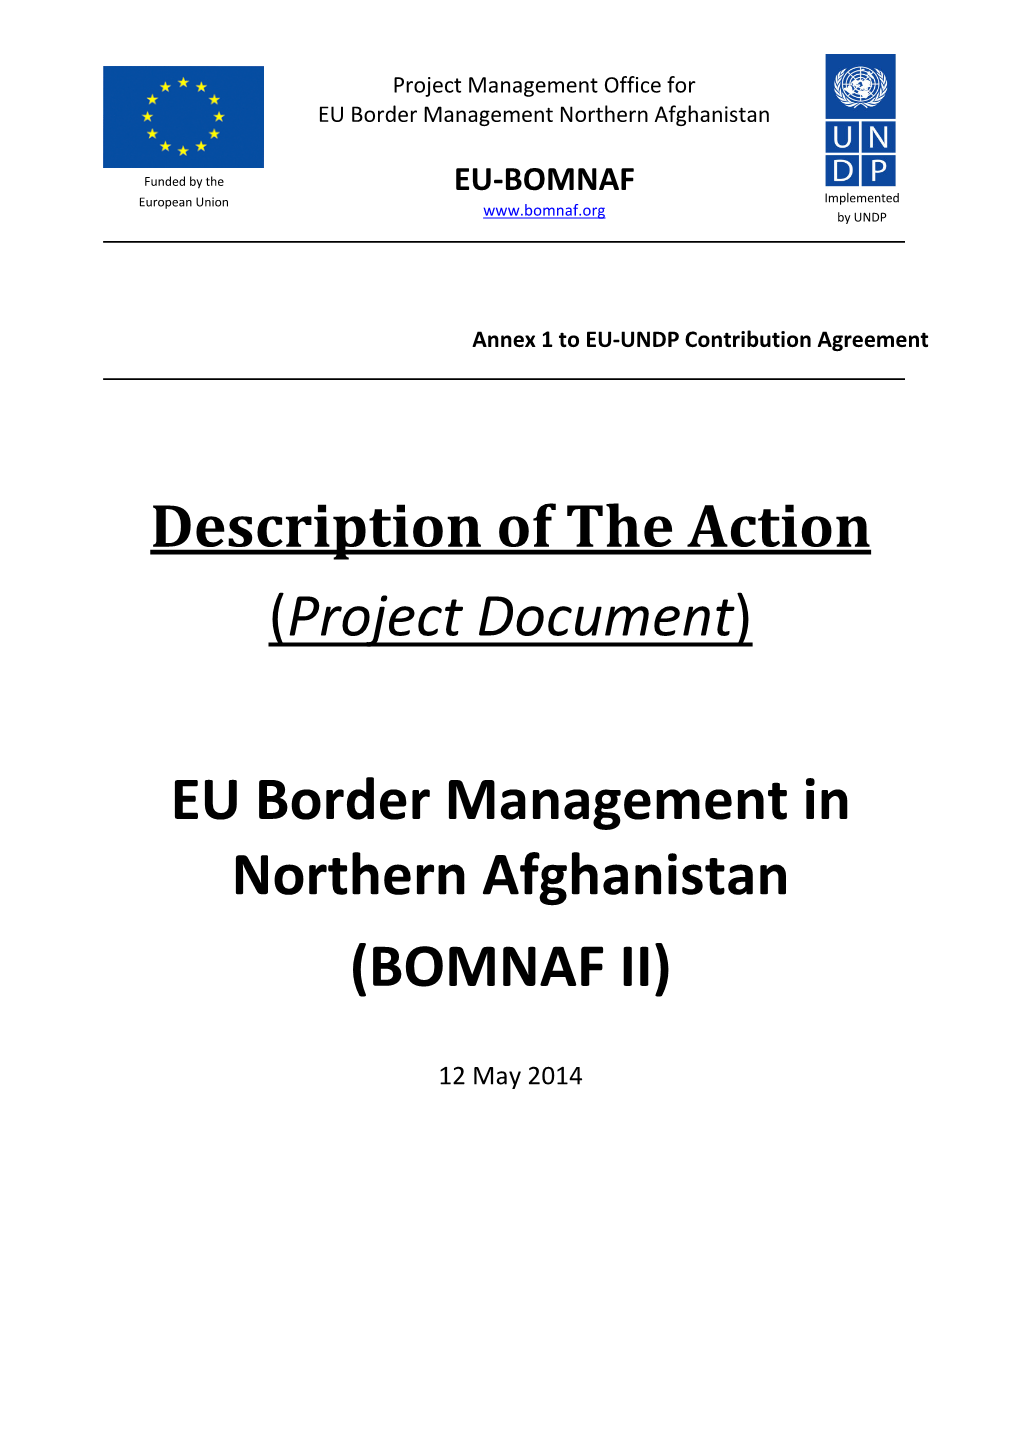 EU Border Management in Northern Afghanistan (BOMNAF II)